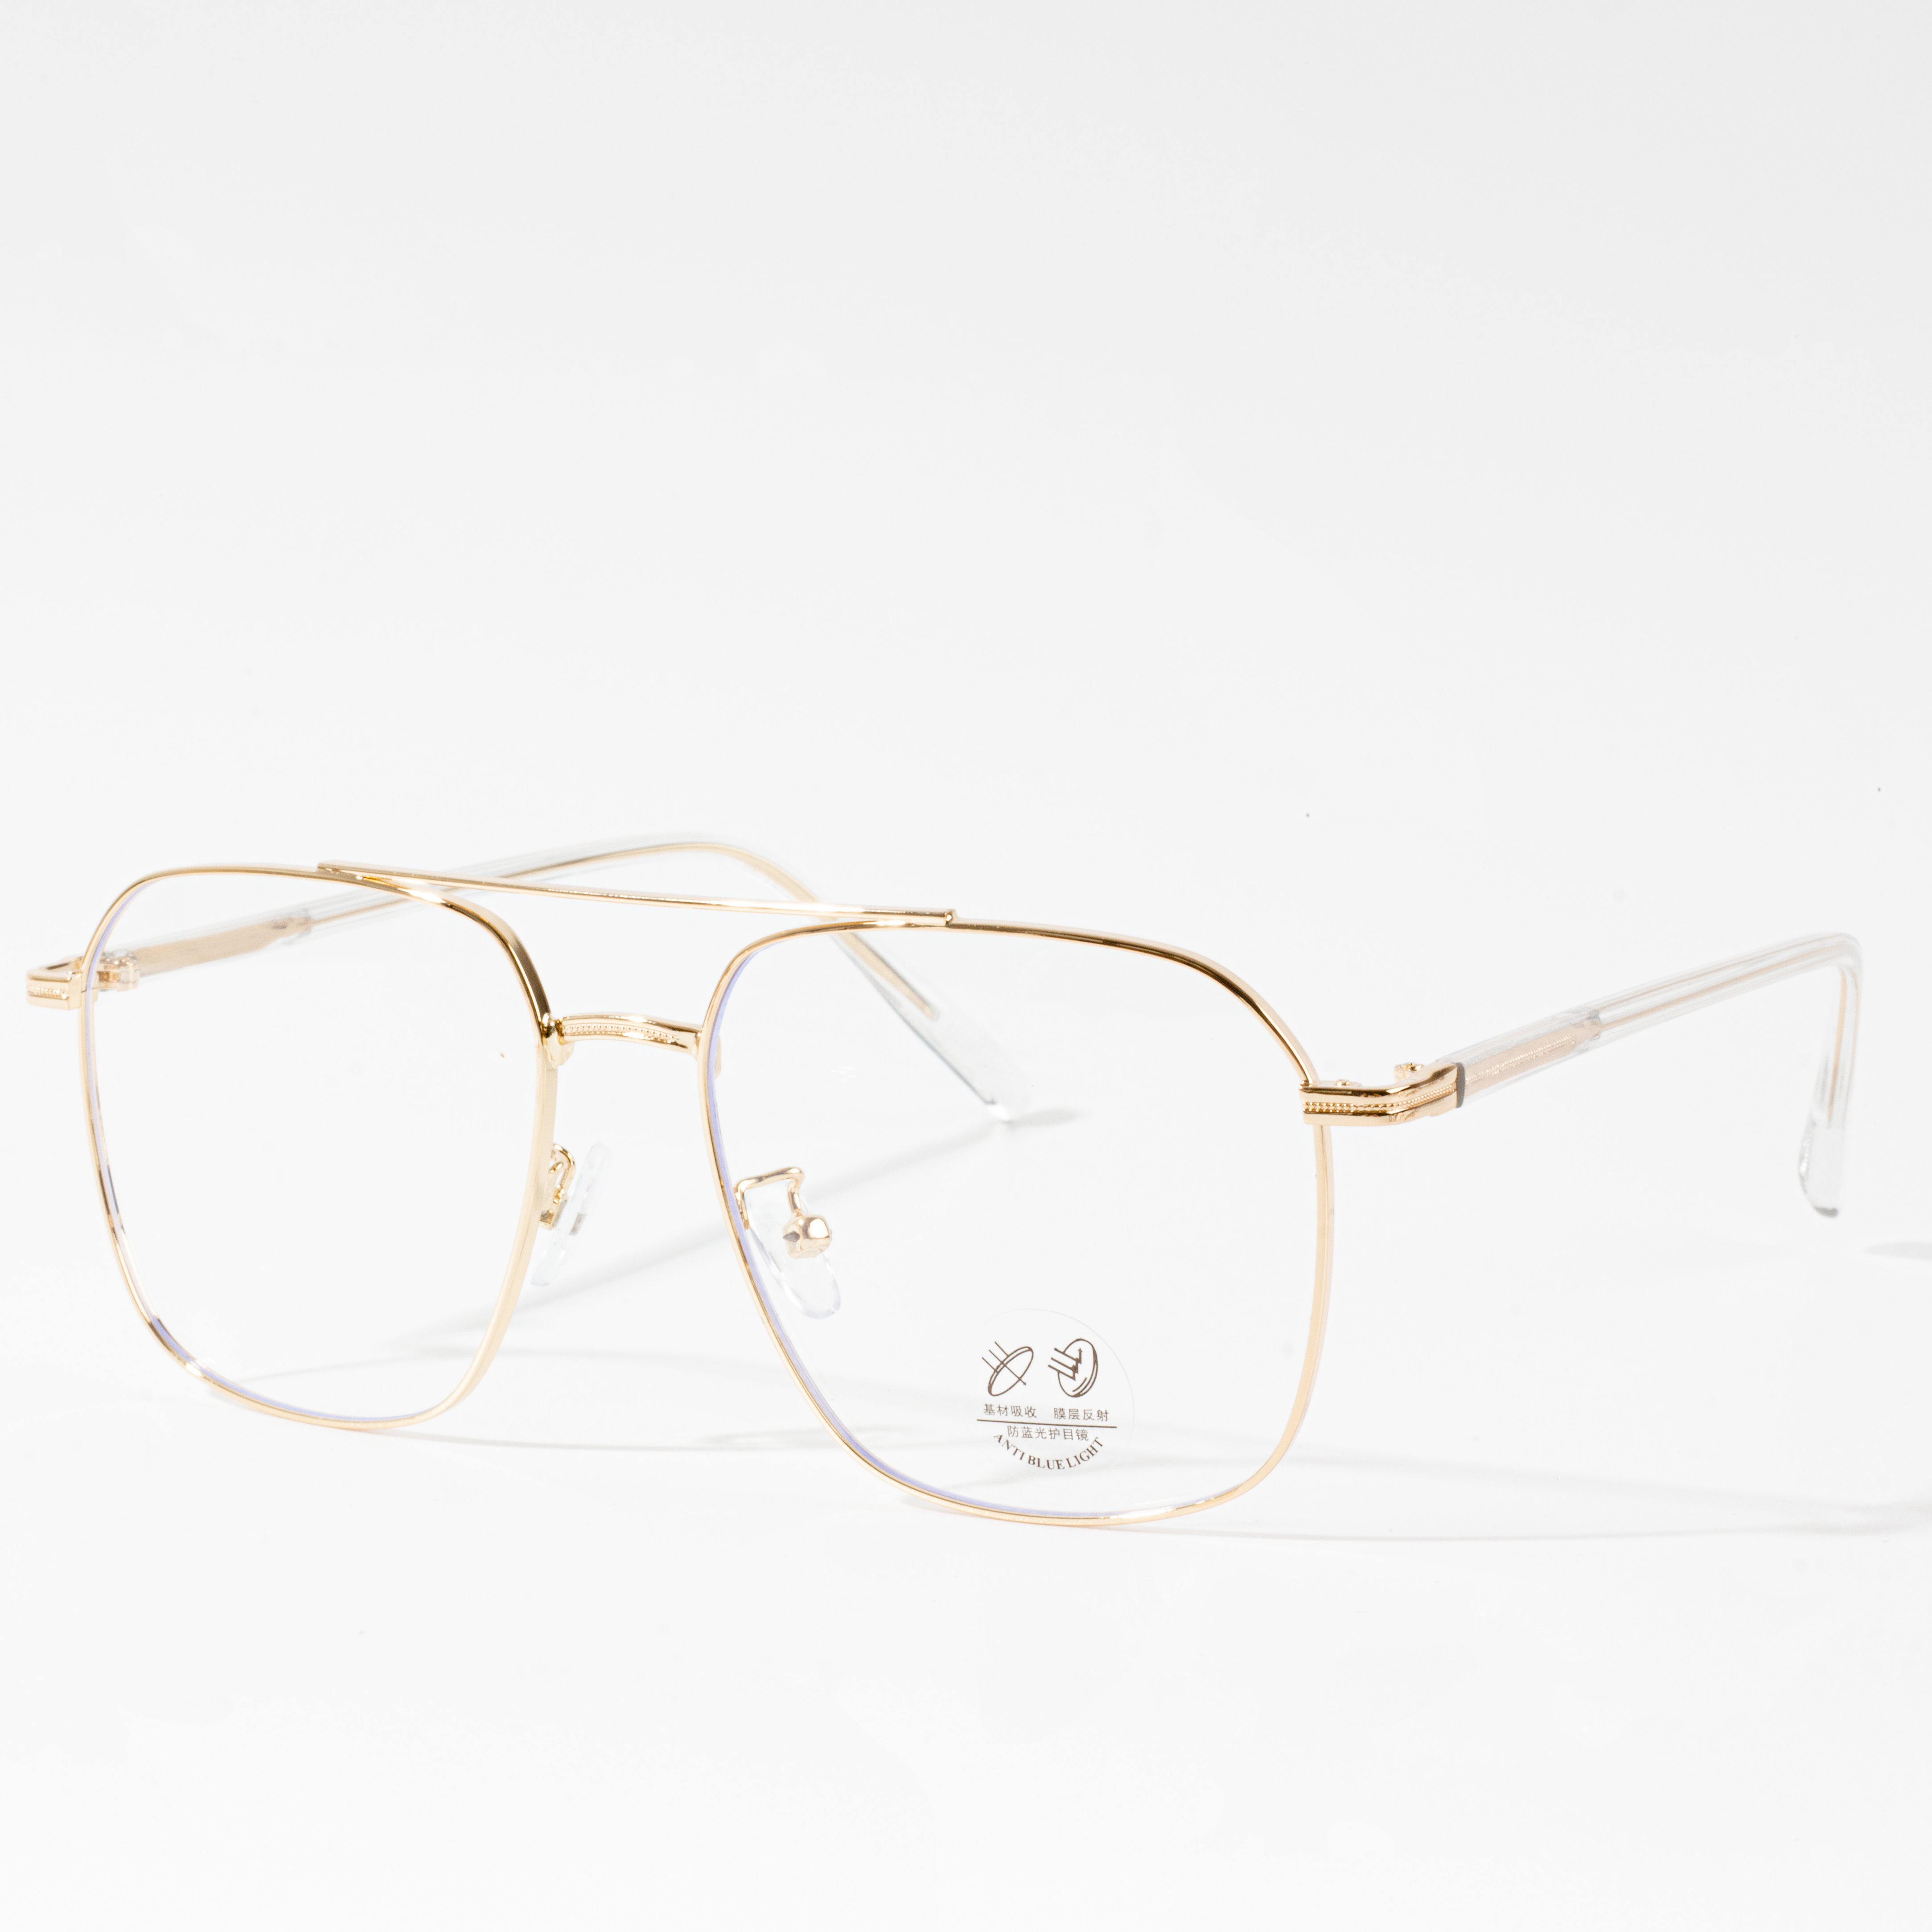 златни рамки за очила